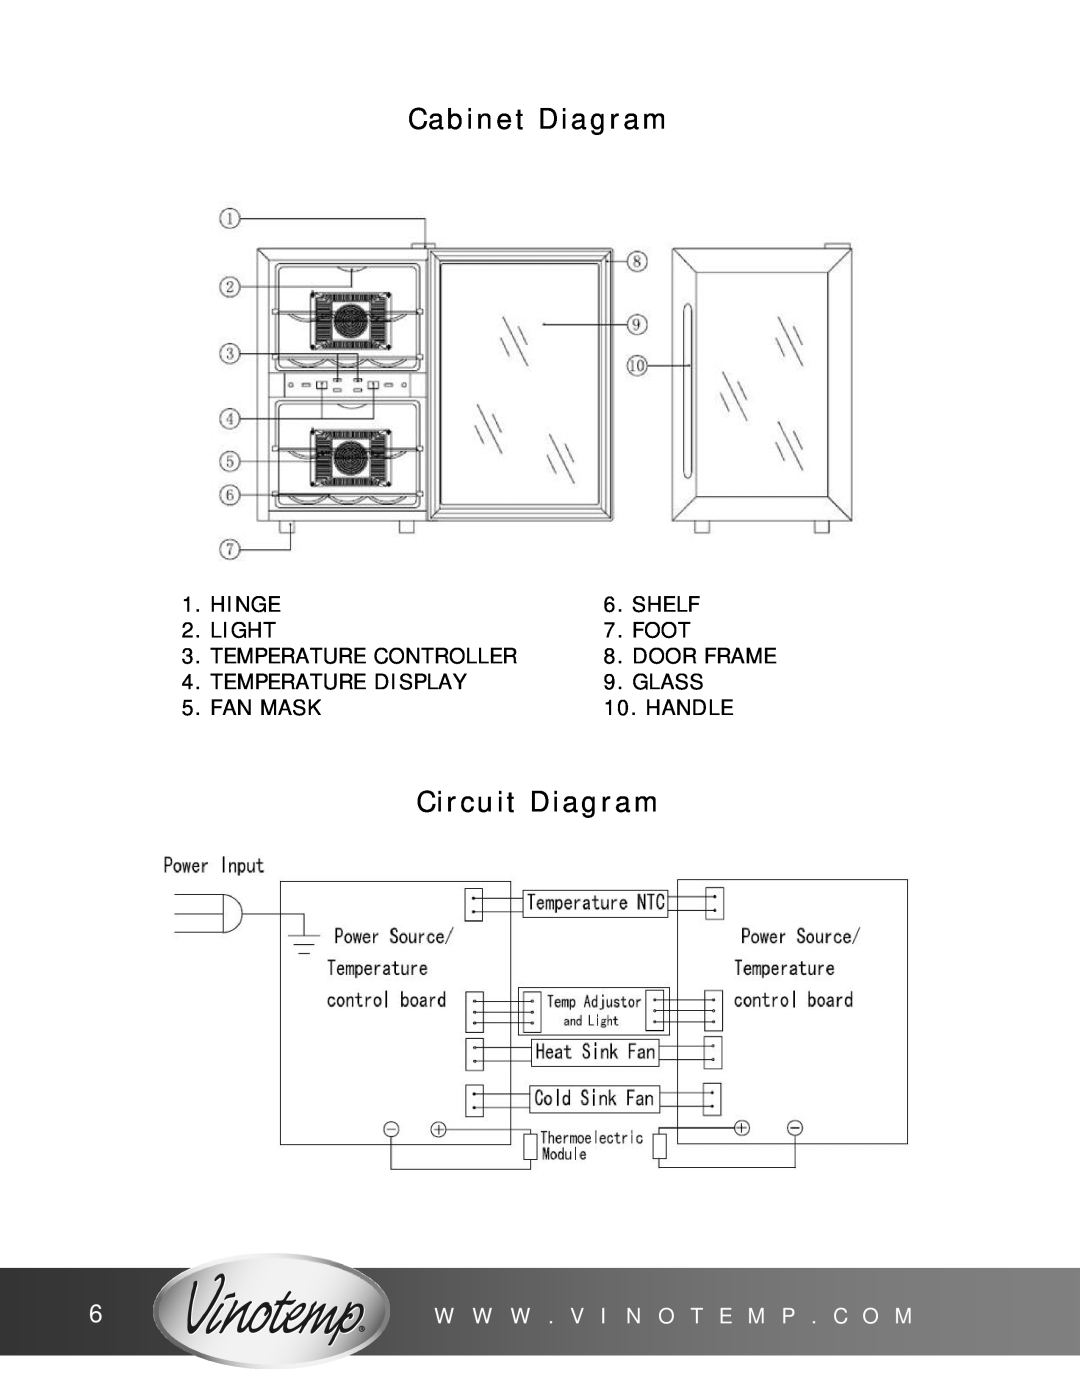 Vinotemp VT12TEDS2Z owner manual Cabinet Diagram, Circuit Diagram, W W W . V I N O T E M P . C O M 